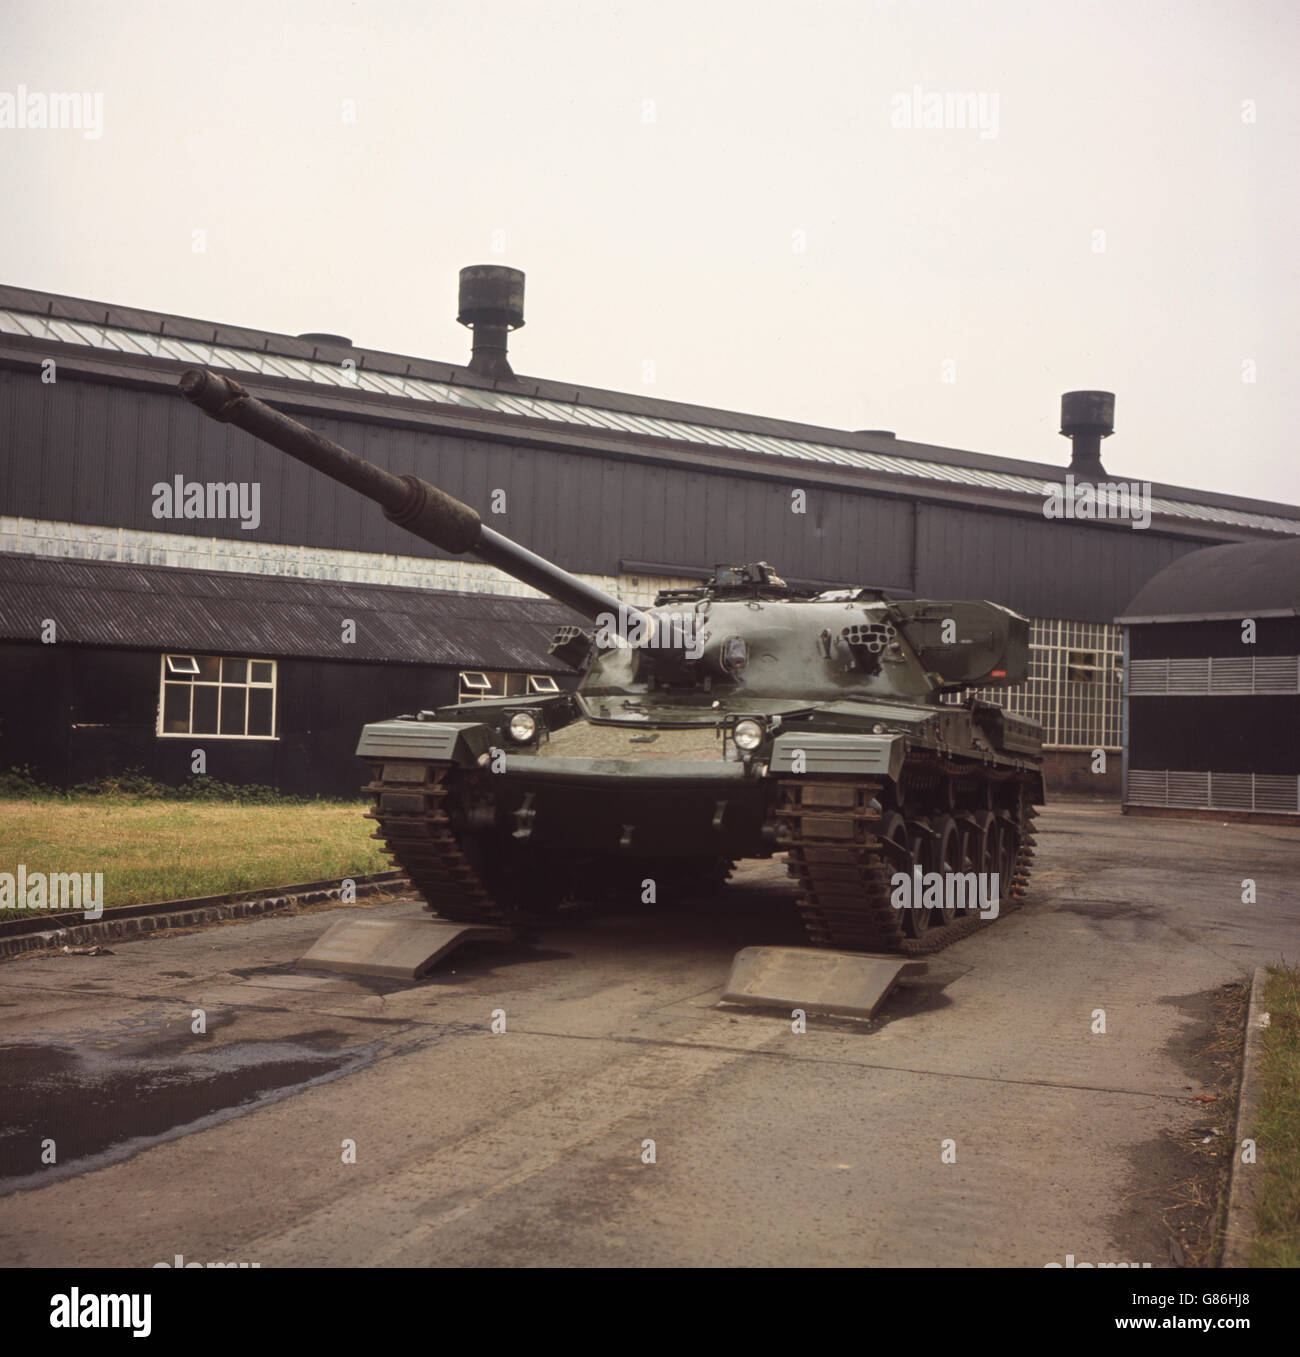 Chieftain, der neueste Panzer der britischen Armee, der 50 Tonnen wiegt und eine 120-mm-Kanone als Hauptbewaffnung hat. Stockfoto